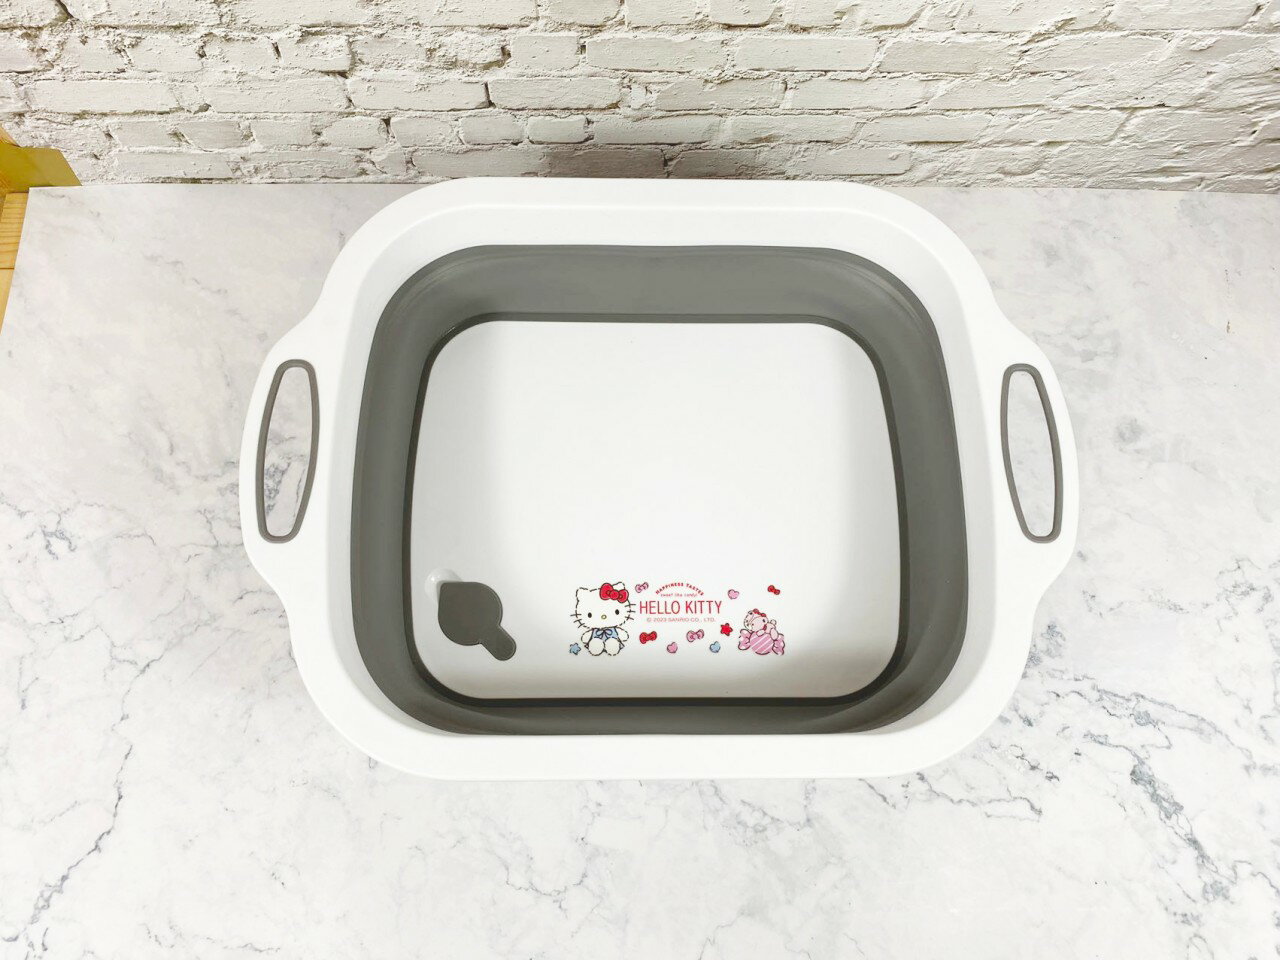 兩用摺疊洗菜籃砧板-Hello Kitty 三麗鷗 Sanrio 正版授權